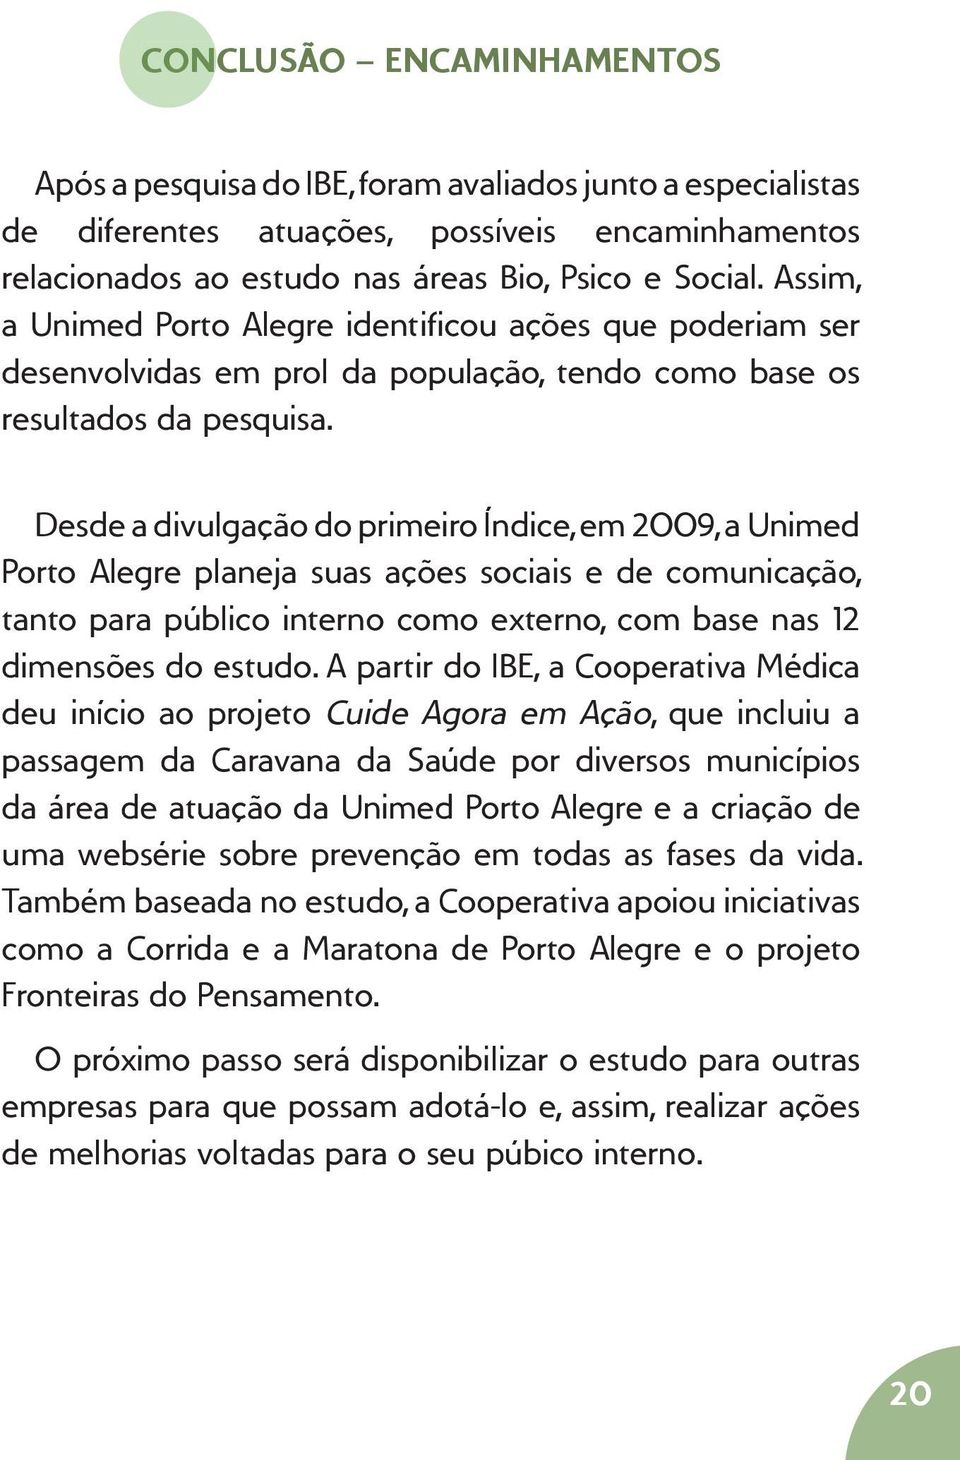 Desde a divulgação do primeiro Índice, em 2009, a Unimed Porto Alegre planeja suas ações sociais e de comunicação, tanto para público interno como externo, com base nas 12 dimensões do estudo.